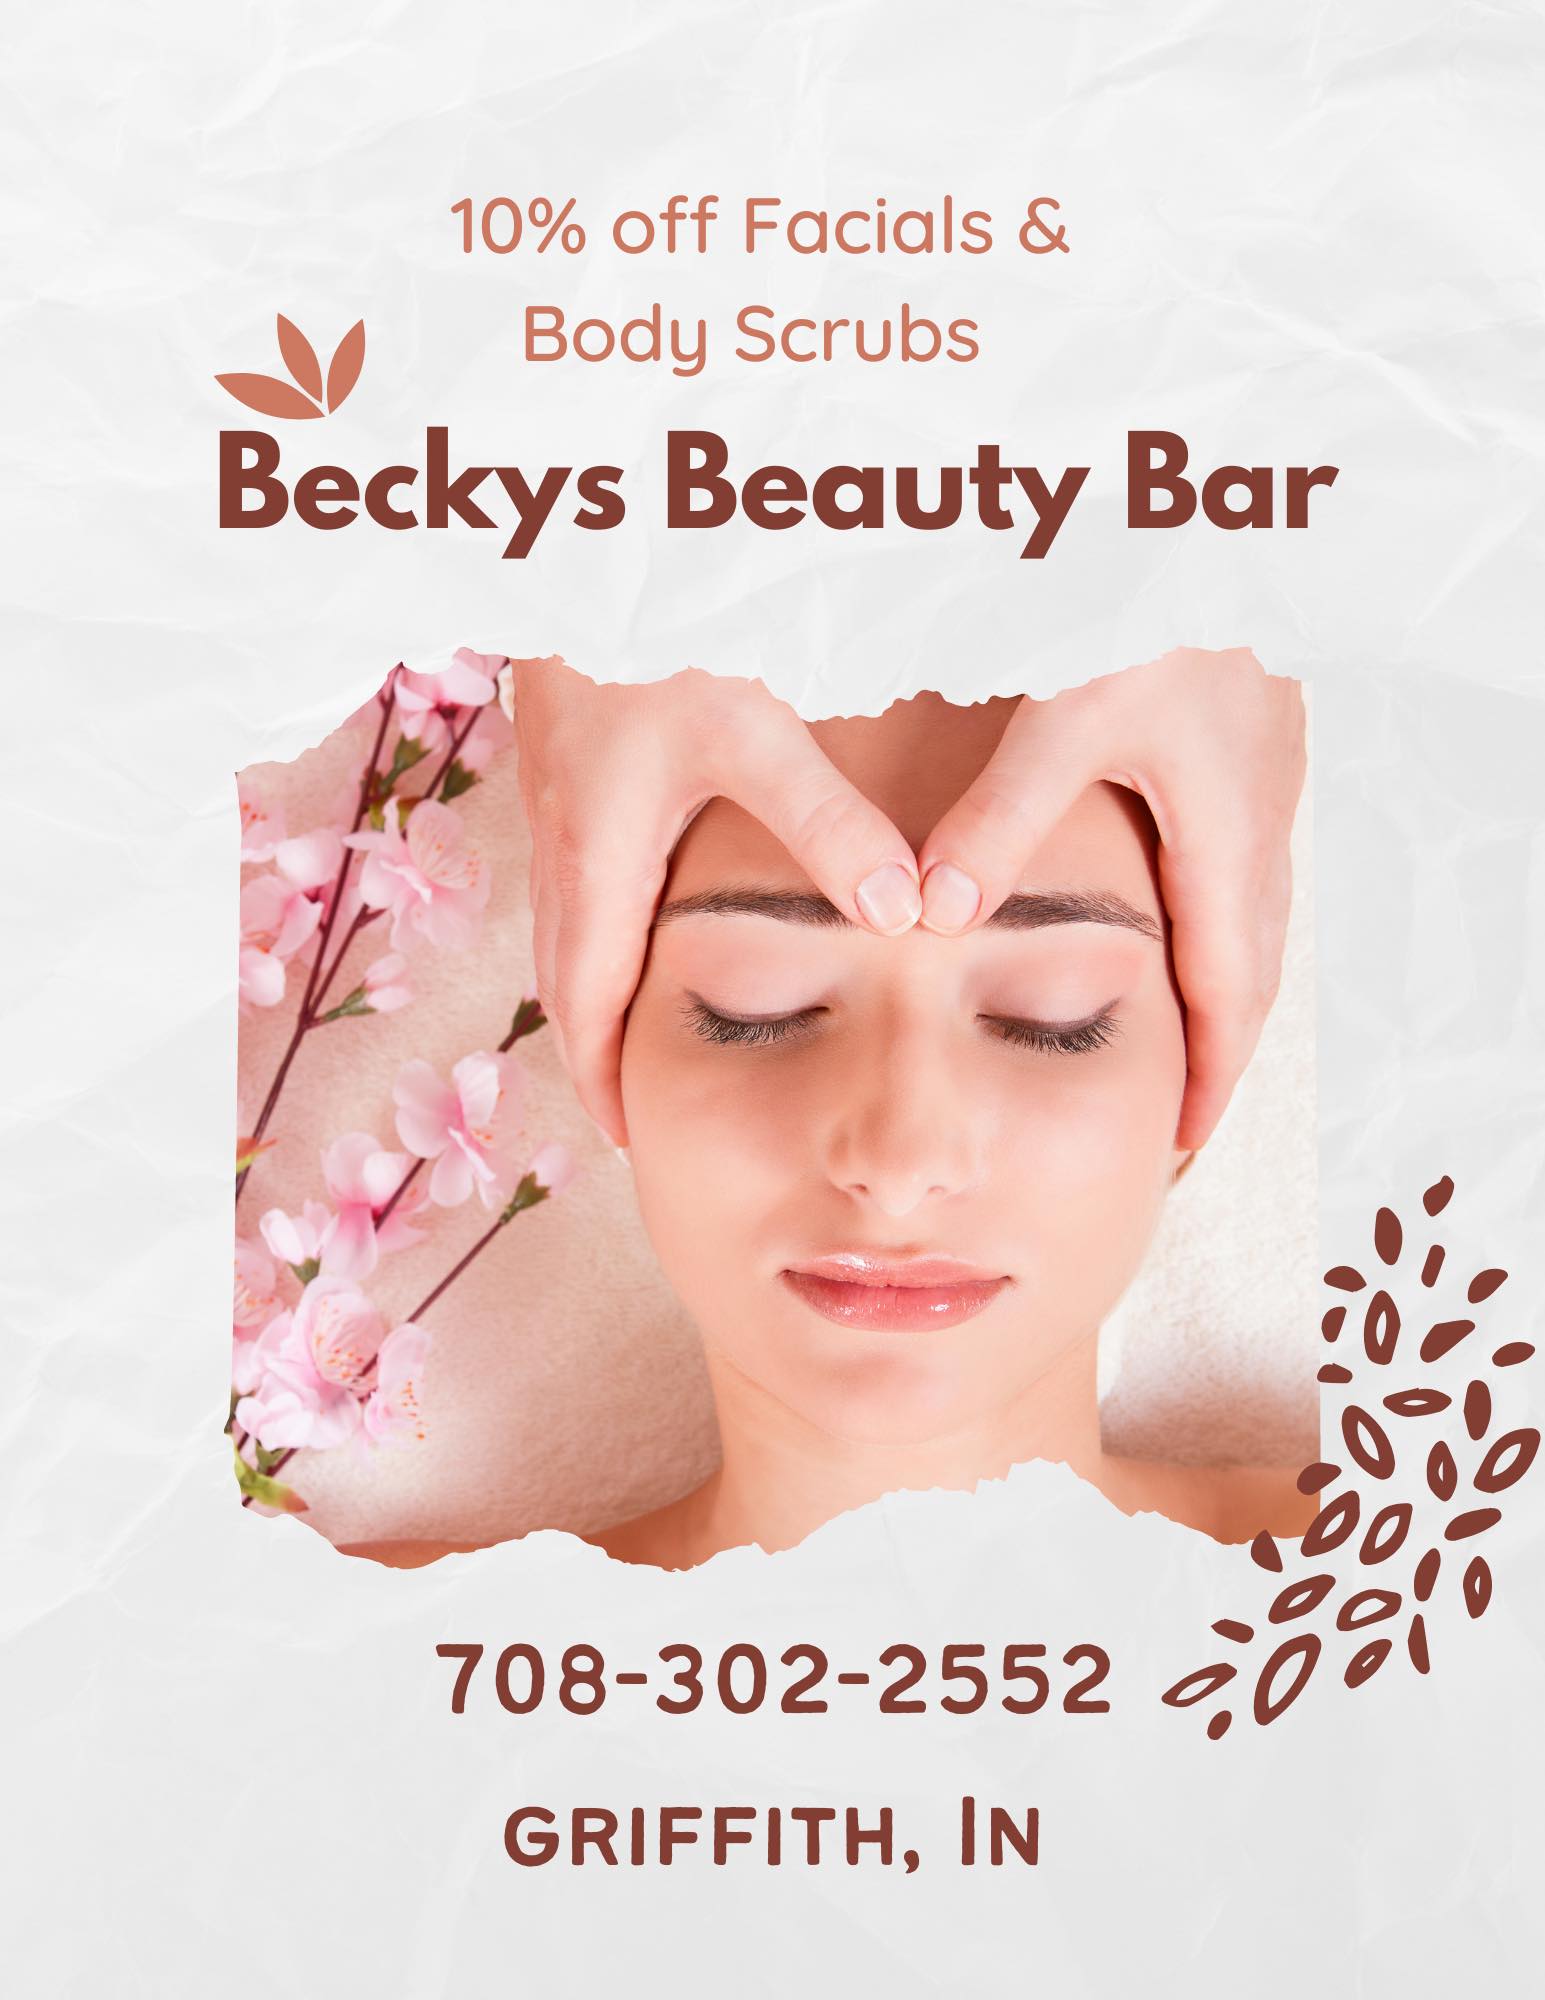 Becky's Beauty Bar LLC